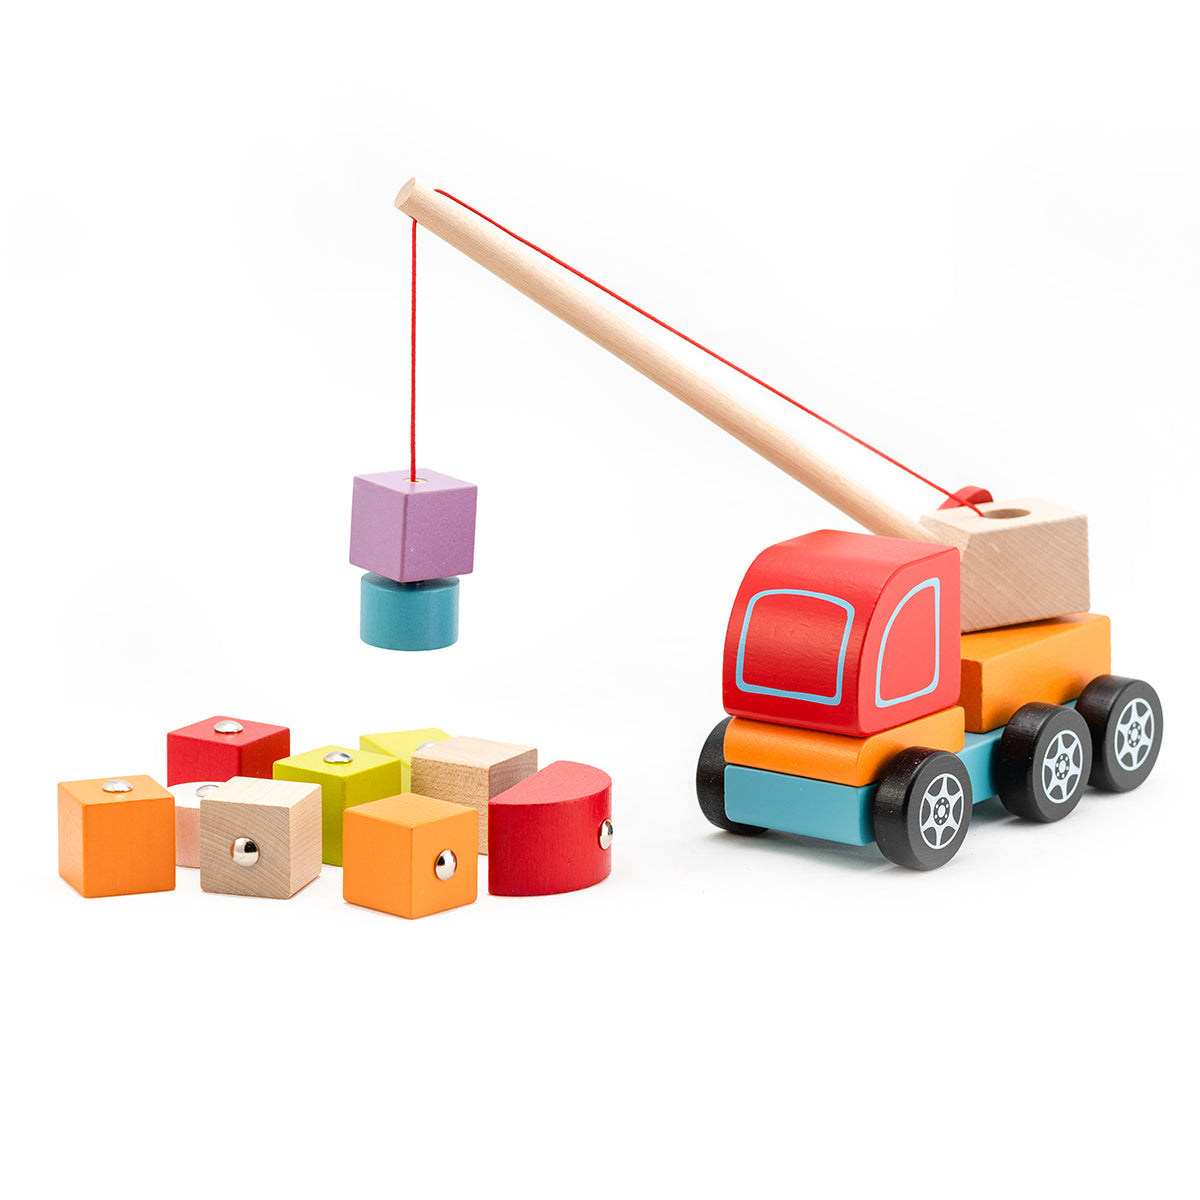 Wooden toy "Crane truck" von Cubika